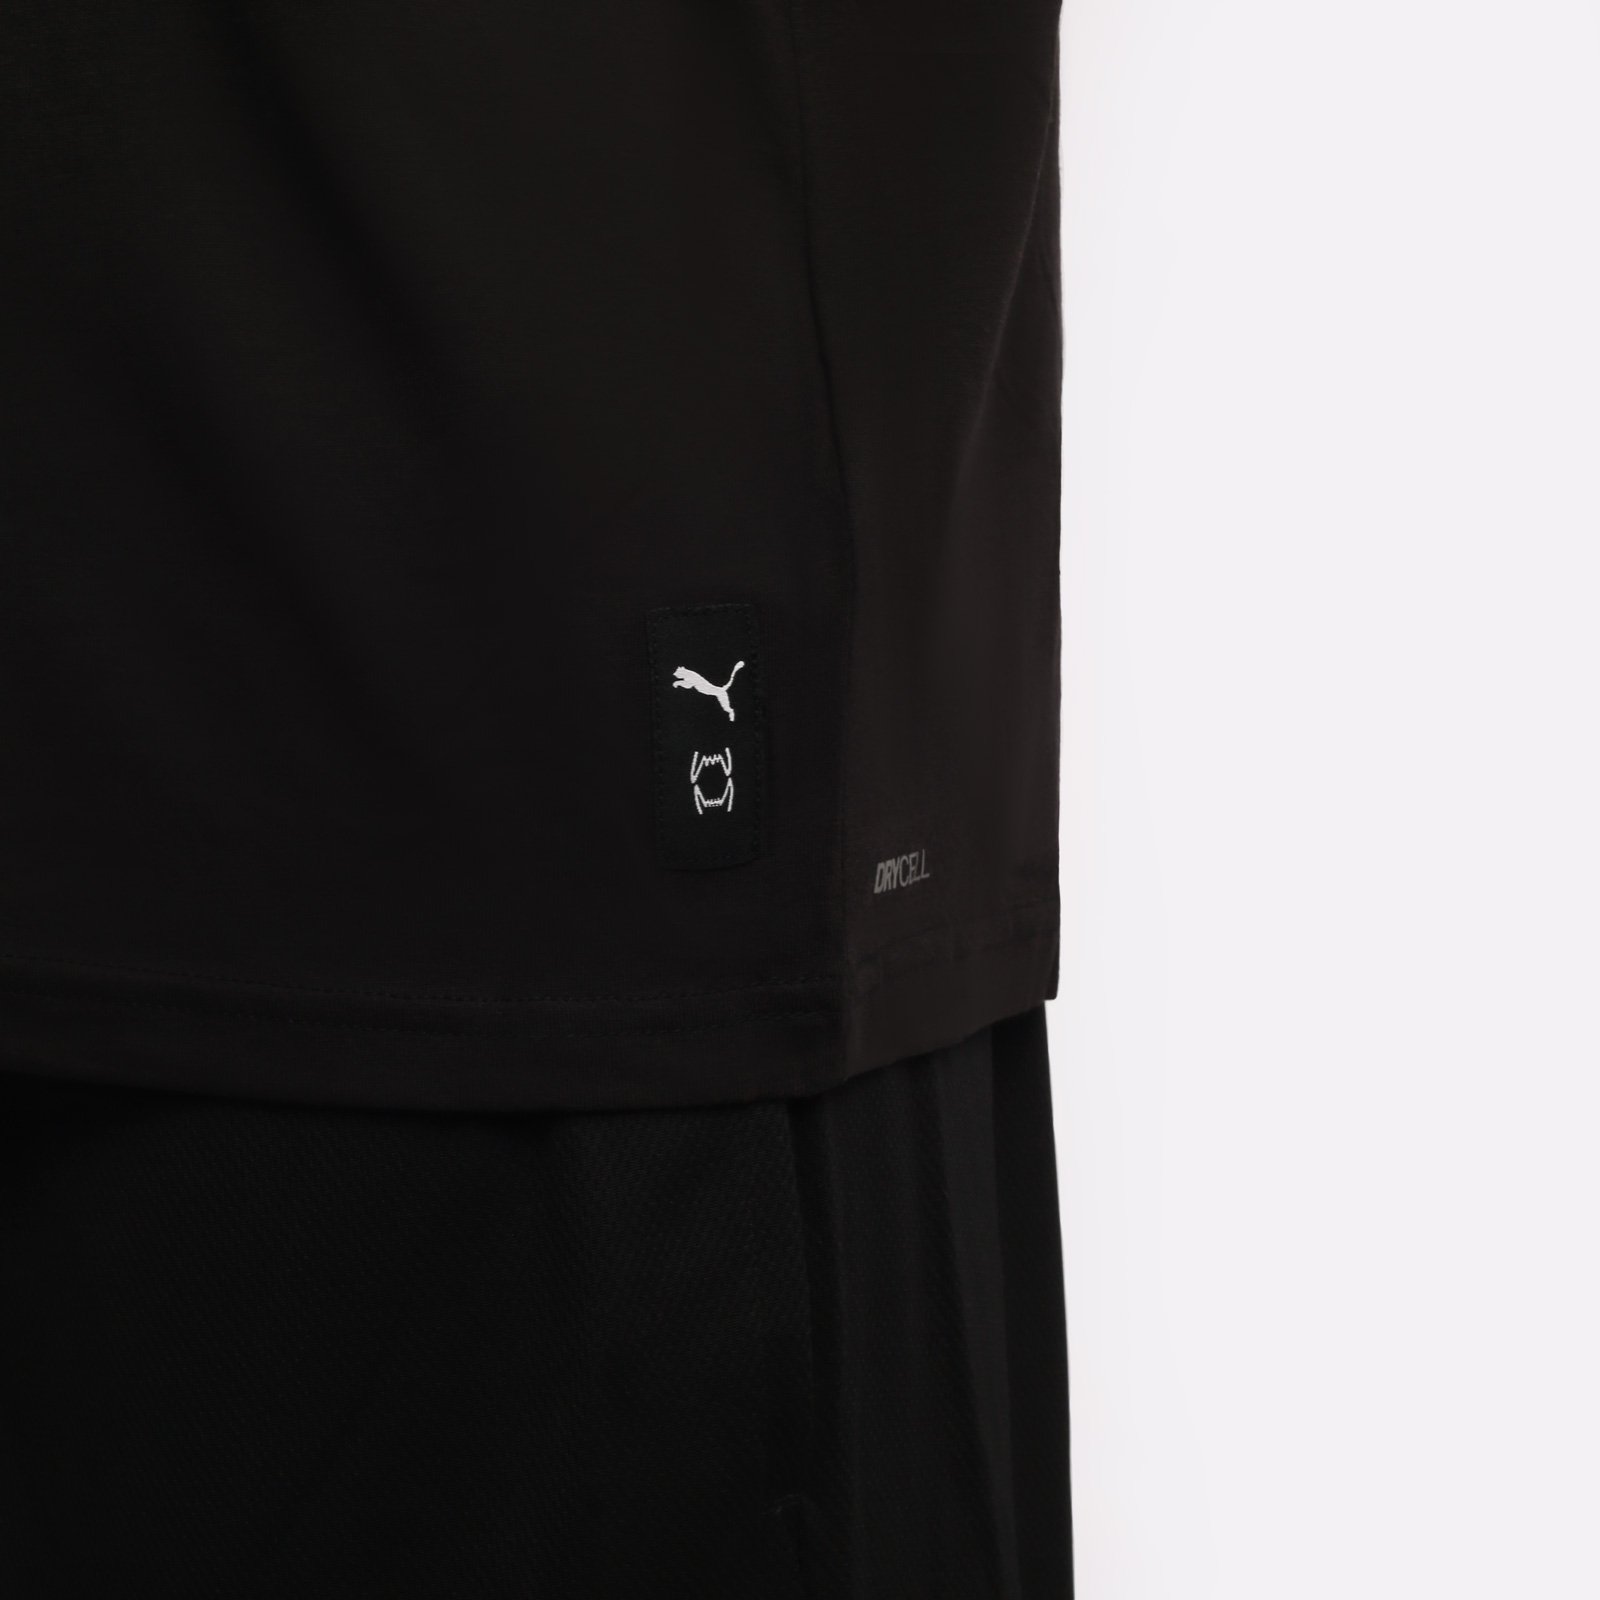 мужская черная футболка PUMA Perimeter Tee 1 53857301 - цена, описание, фото 3